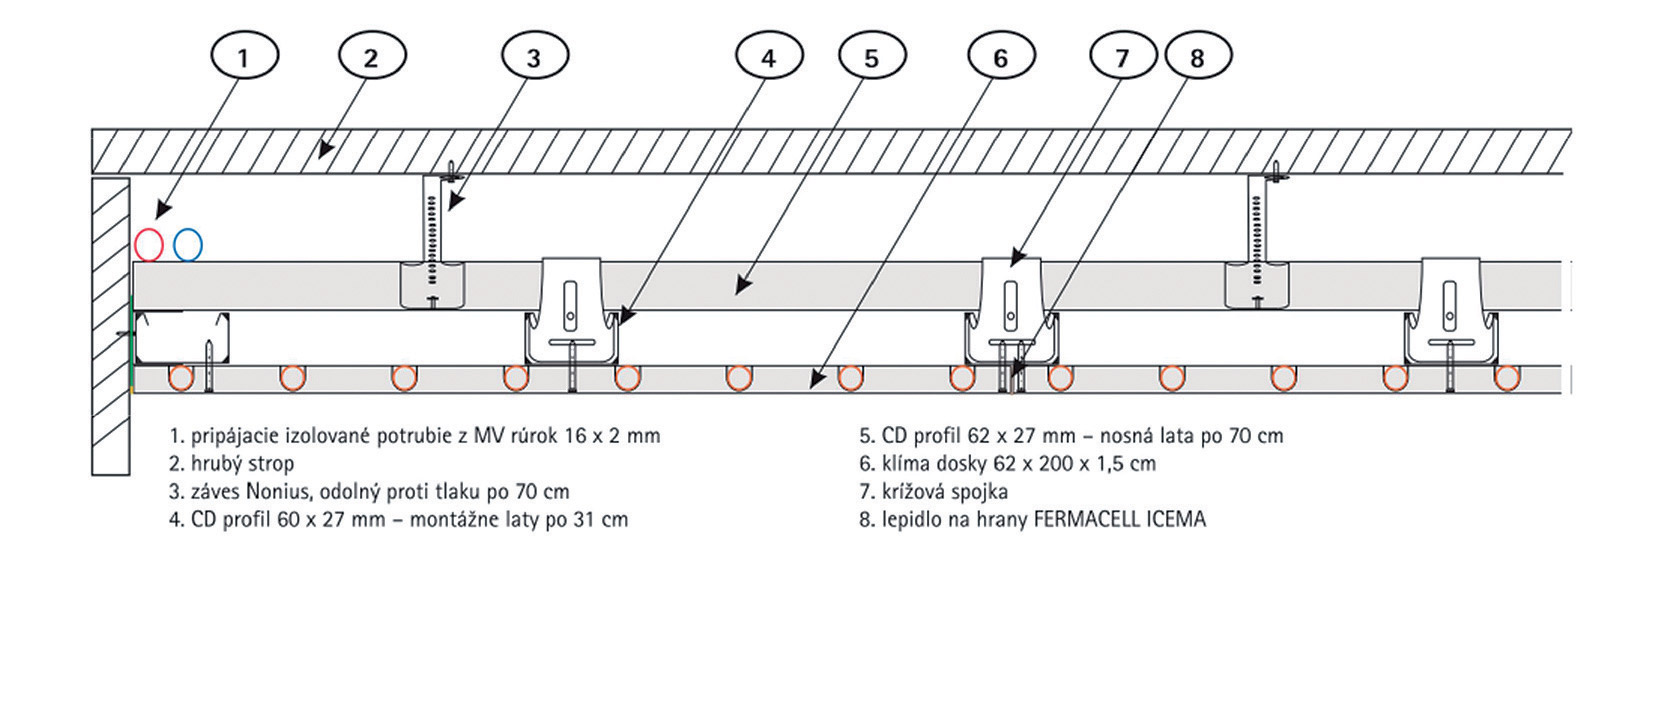 Obr. 3 Aplikace panelů s integrovanými trubkami na stropní vytápění [18]